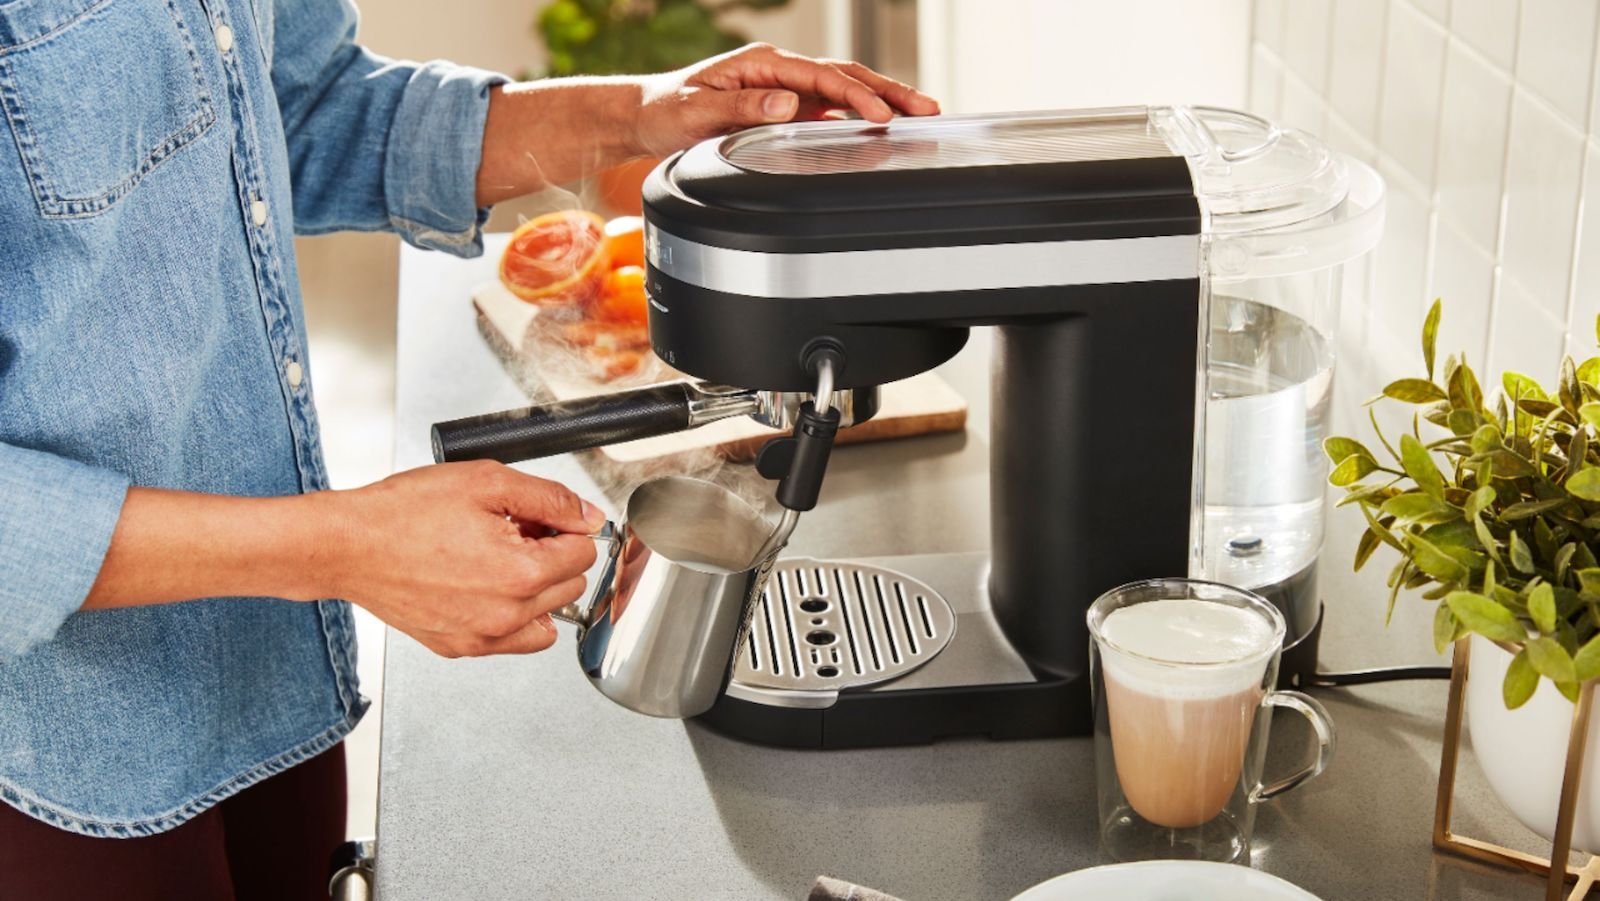 KitchenAid Semi-Automatic Espresso Machine has a 15-bar Italian pump for rich, thick crema